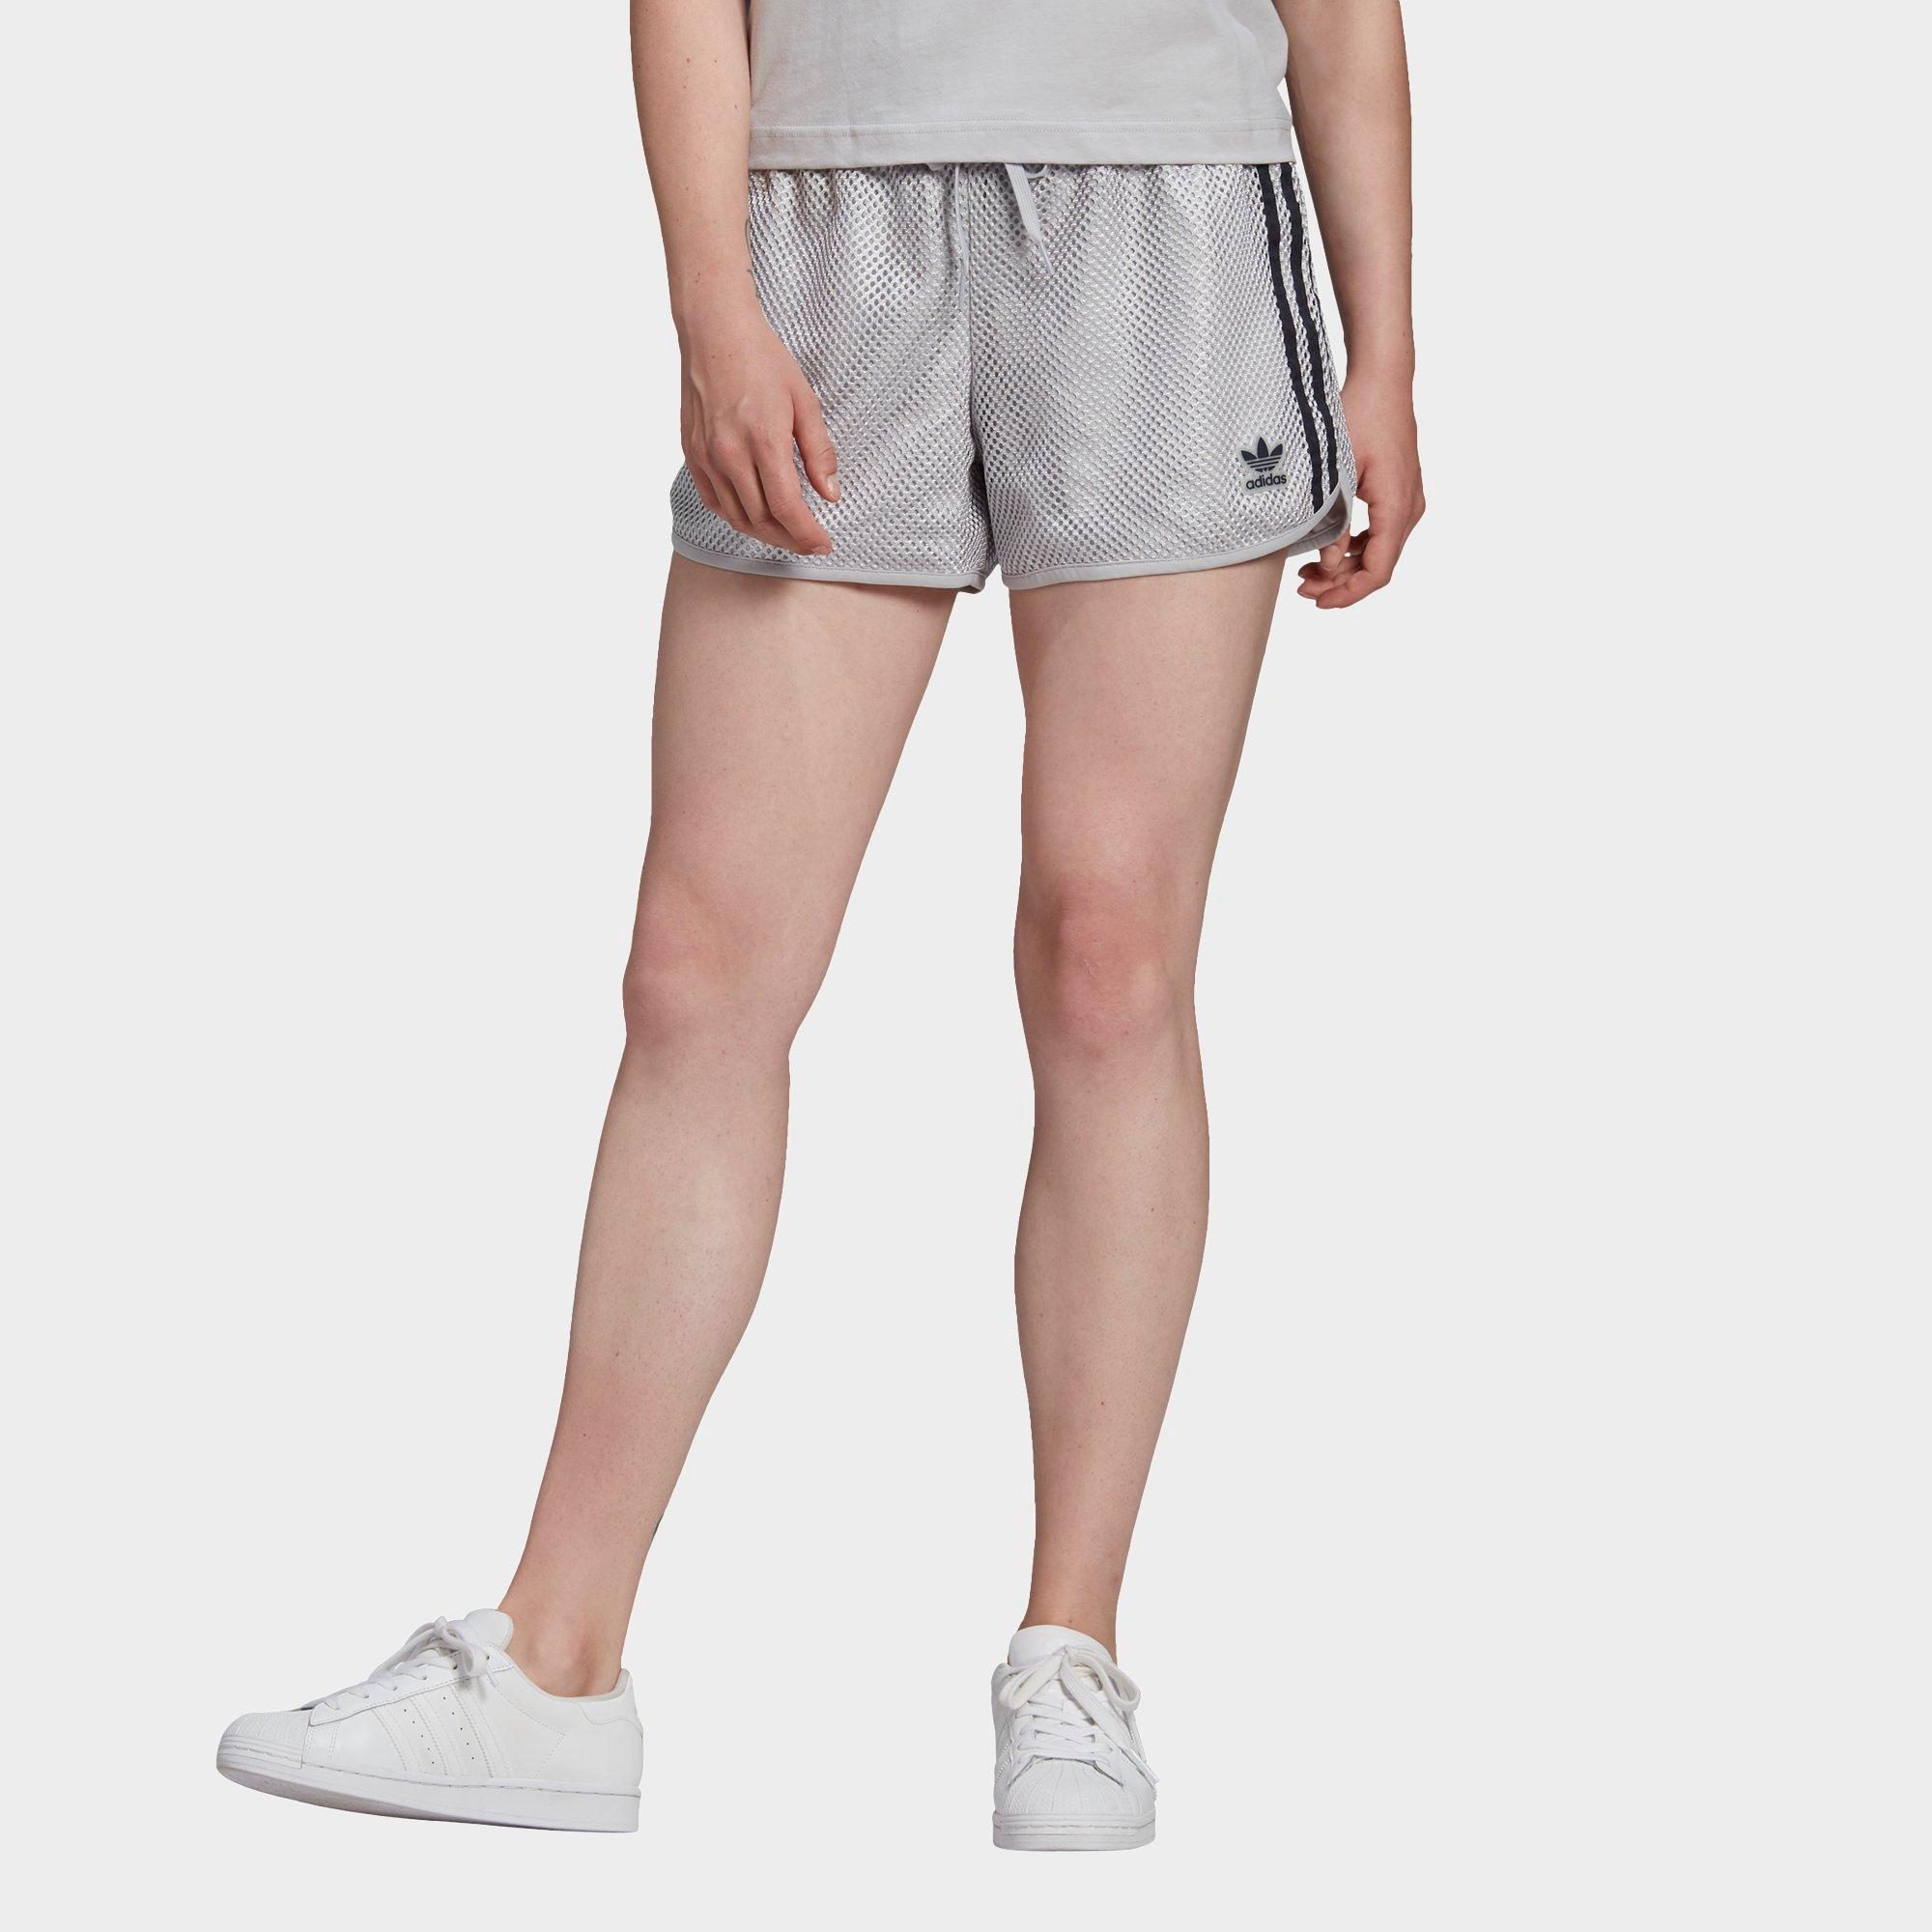 jd adidas shorts womens